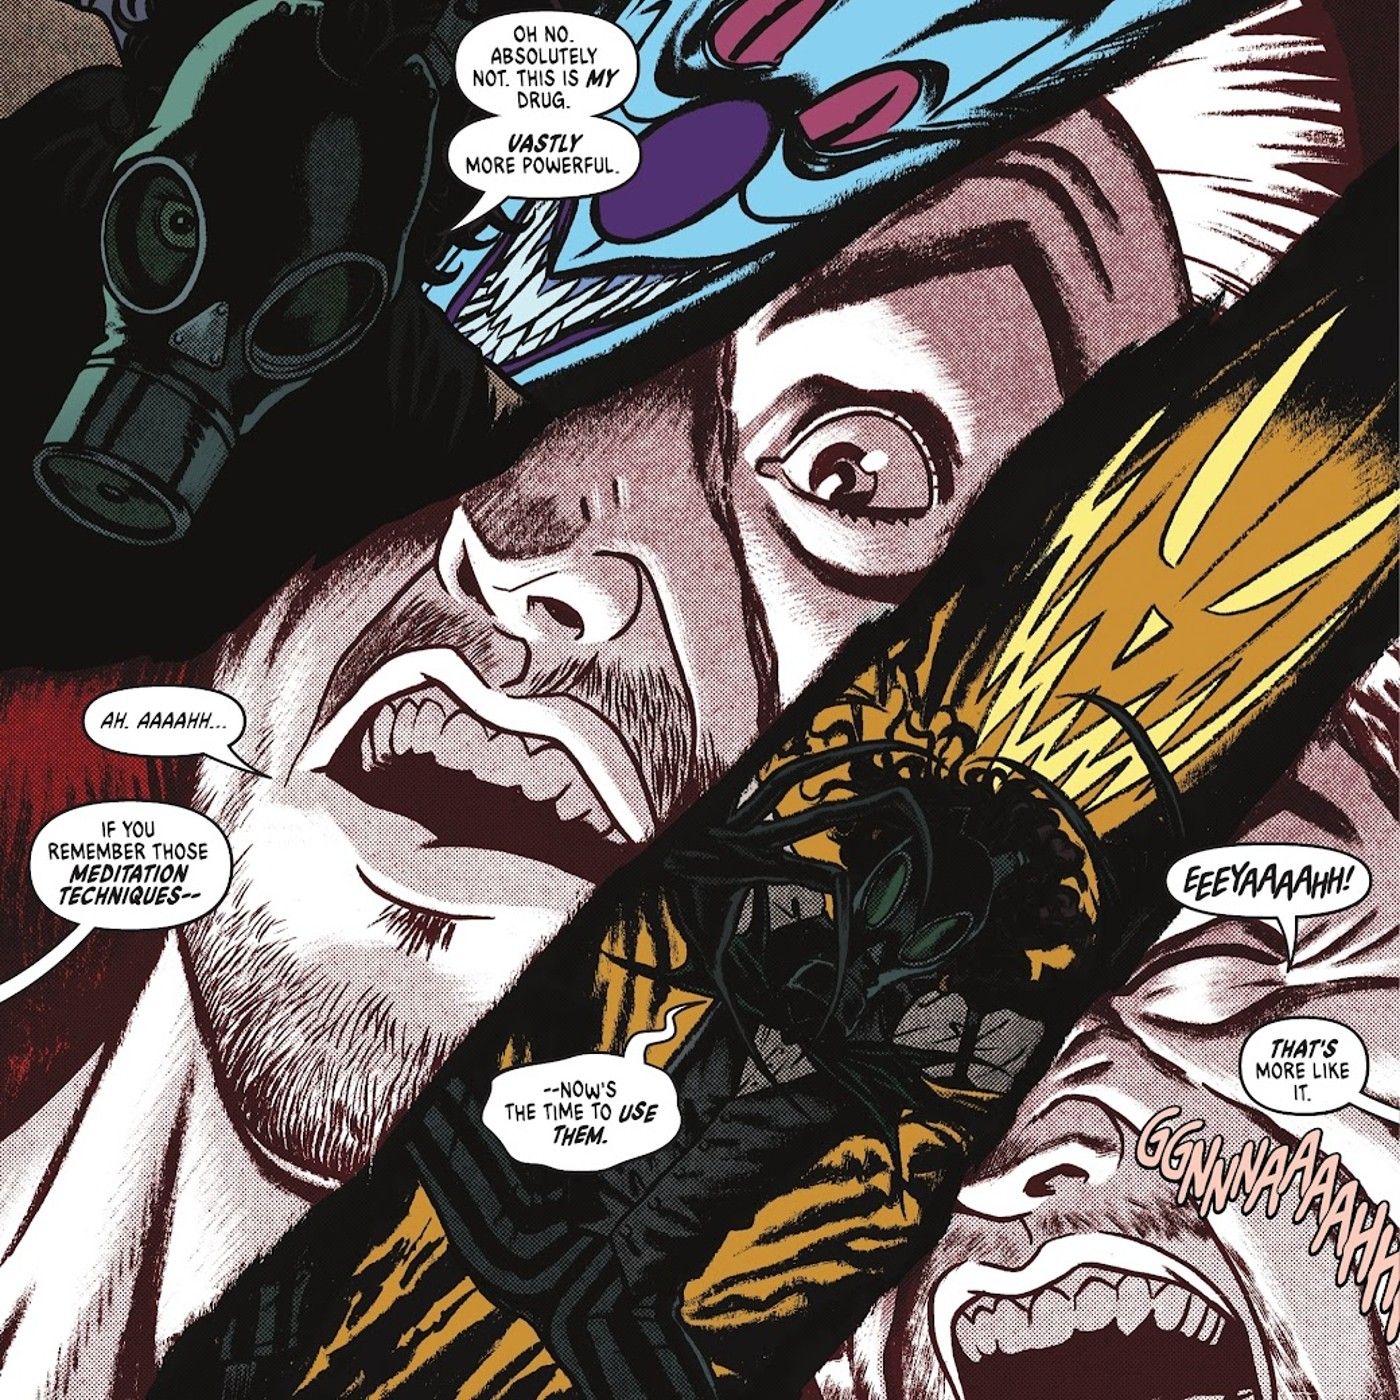 Quadrinhos: Bruce Wayne testemunha um Espantalho aterrorizante durante uma viagem.